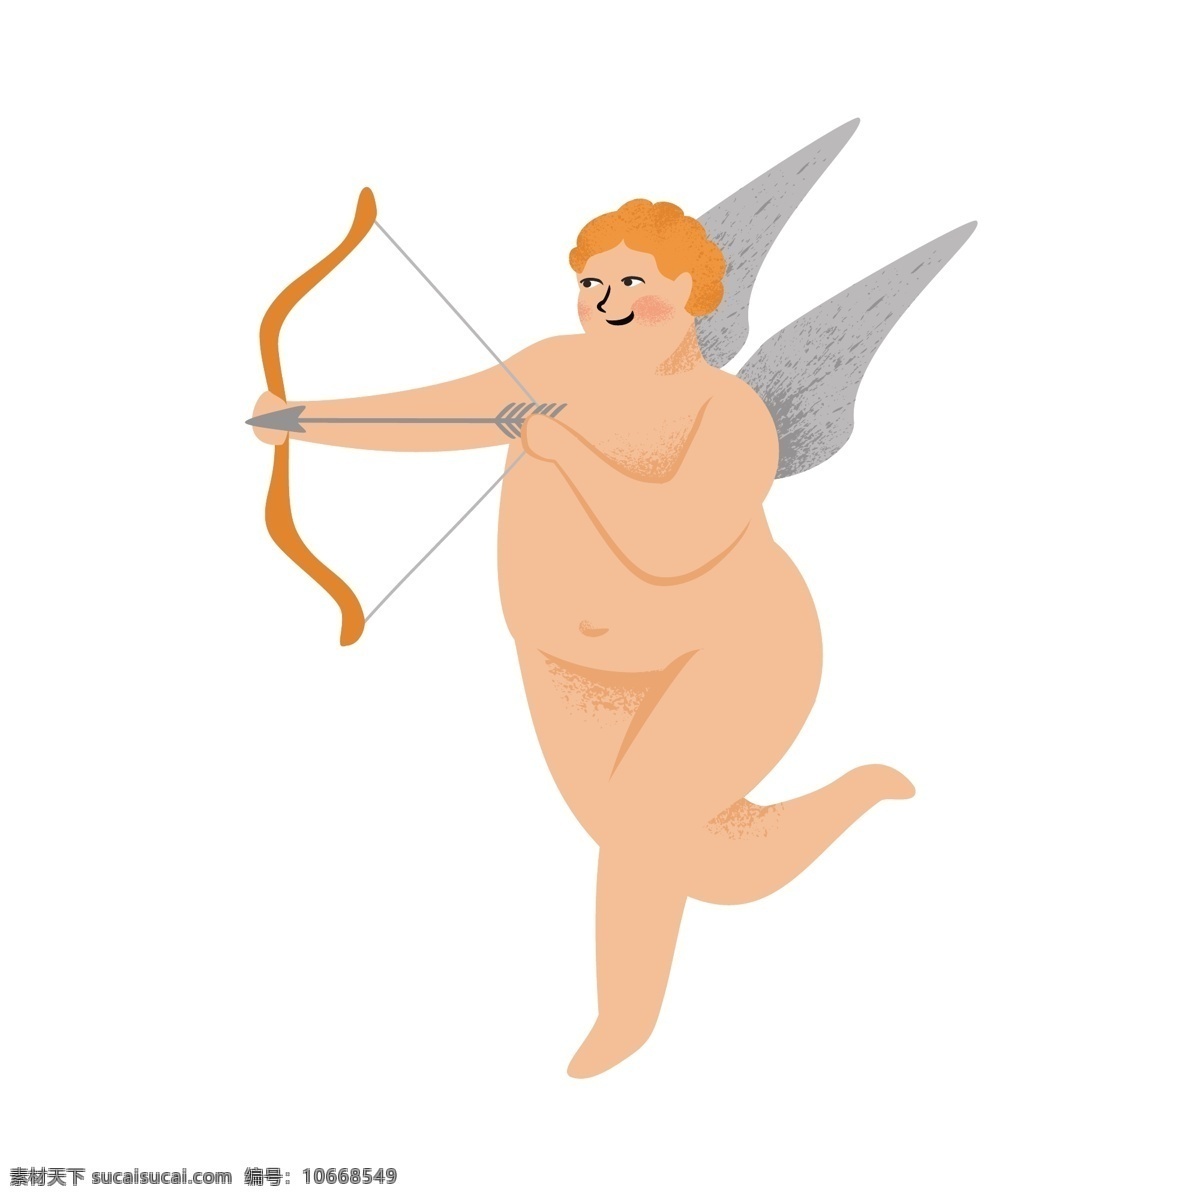 丘比特 之箭 矢量 箭头 可爱 可爱的 可爱的丘比特 卡通 卡通的 卡通的丘比特 卡通丘比特 可爱丘比特 翅膀 爱情之神